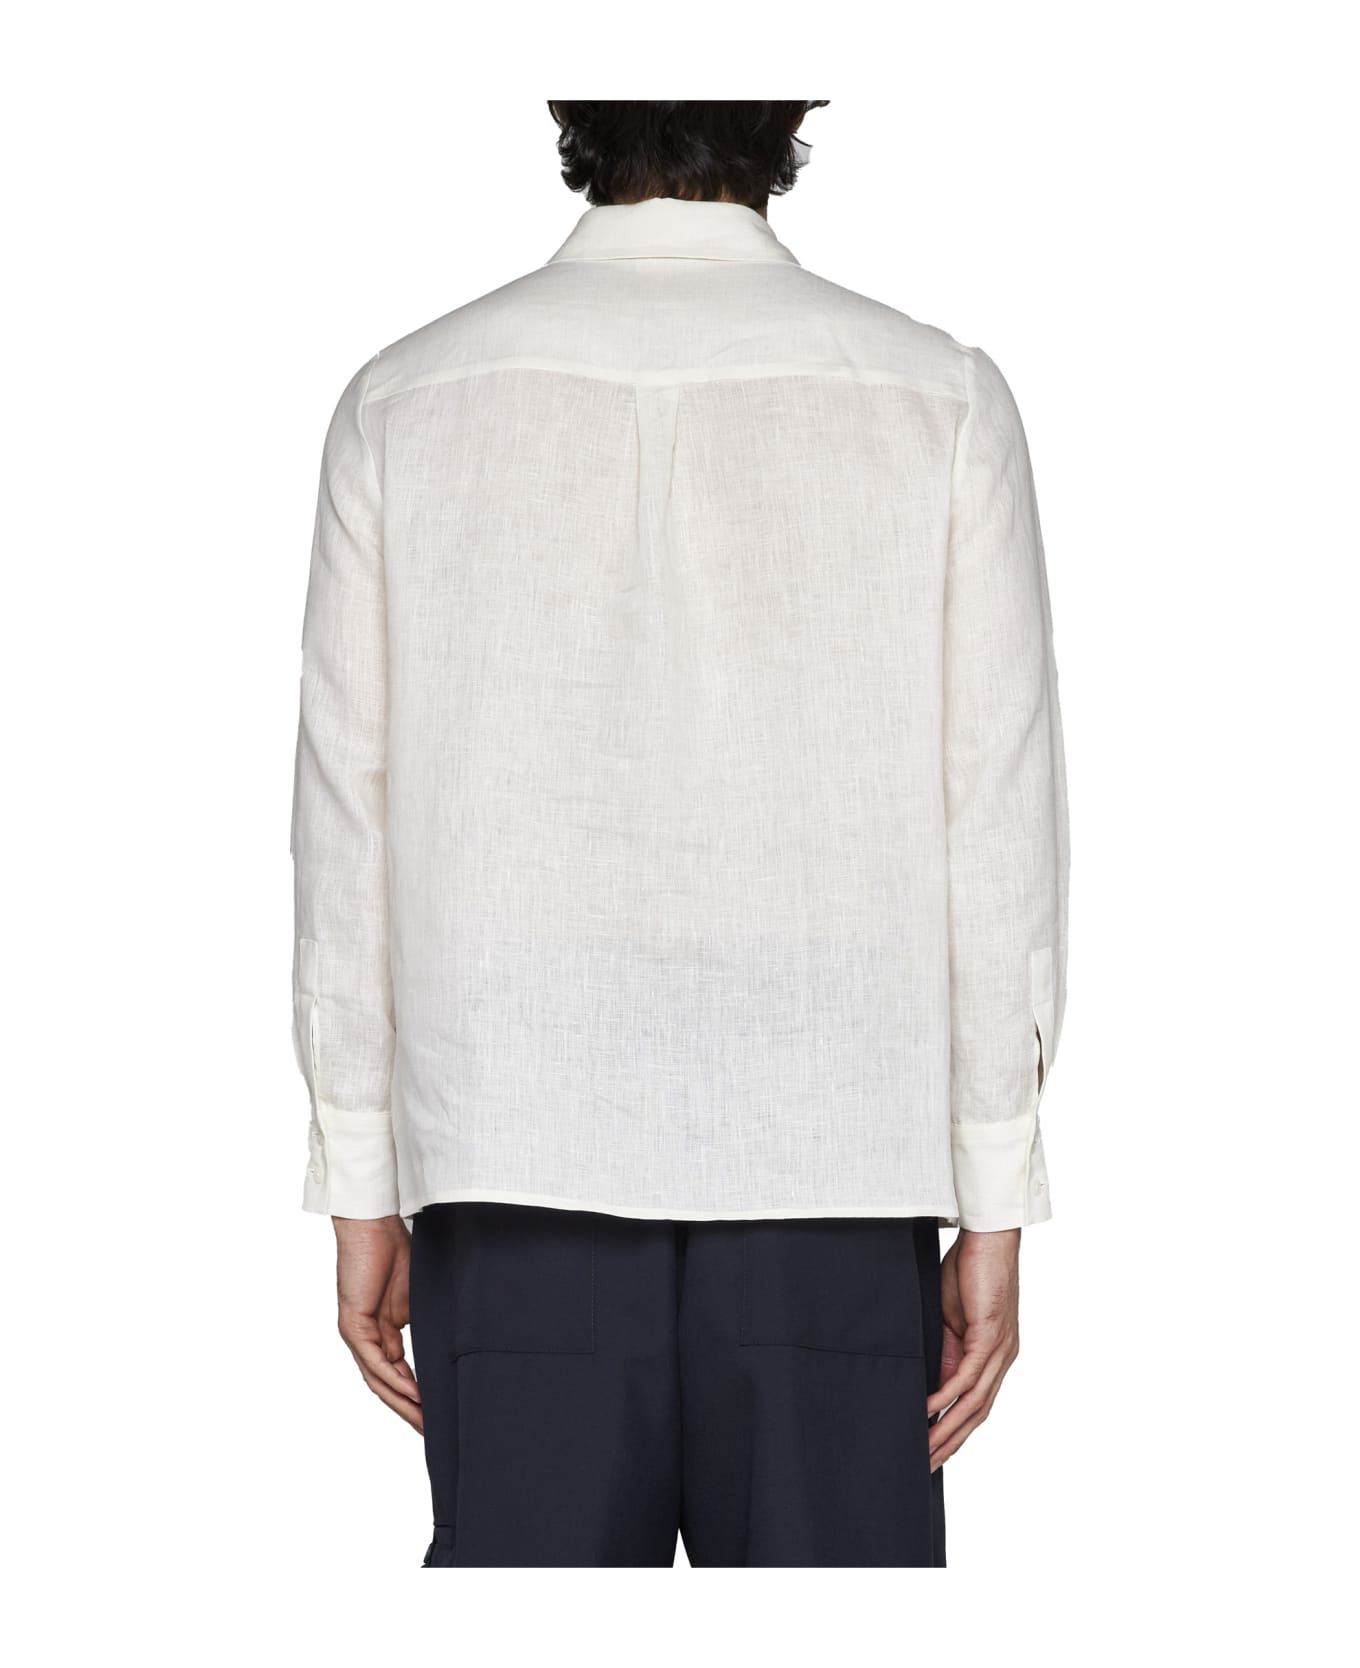 Lardini Shirt - Bianco シャツ